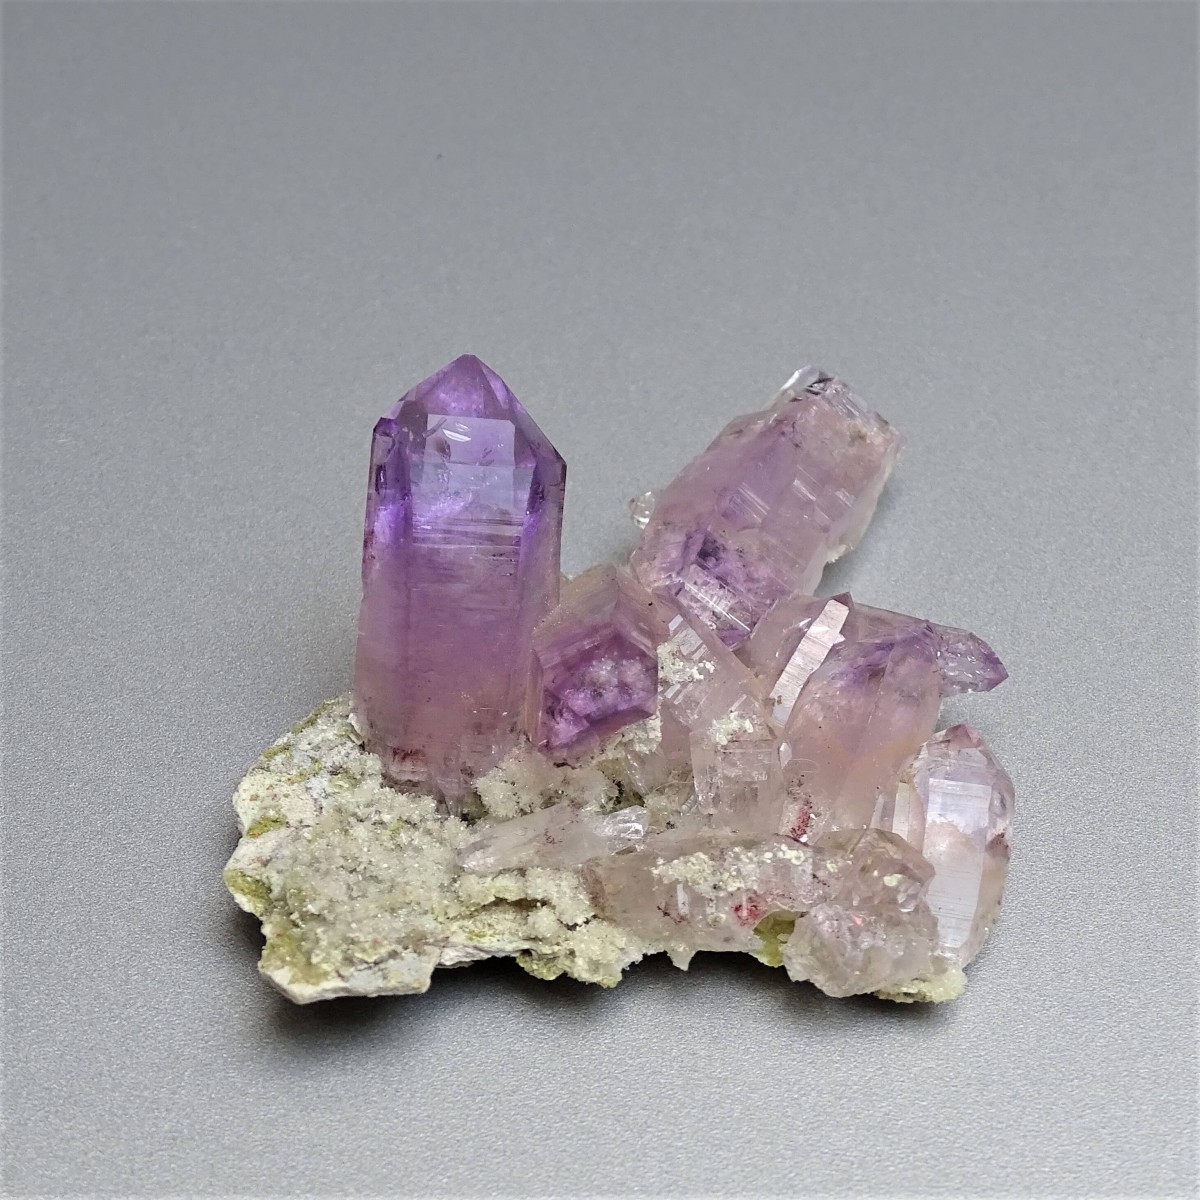 Amethyst natural crystals 29,8g, Mexico